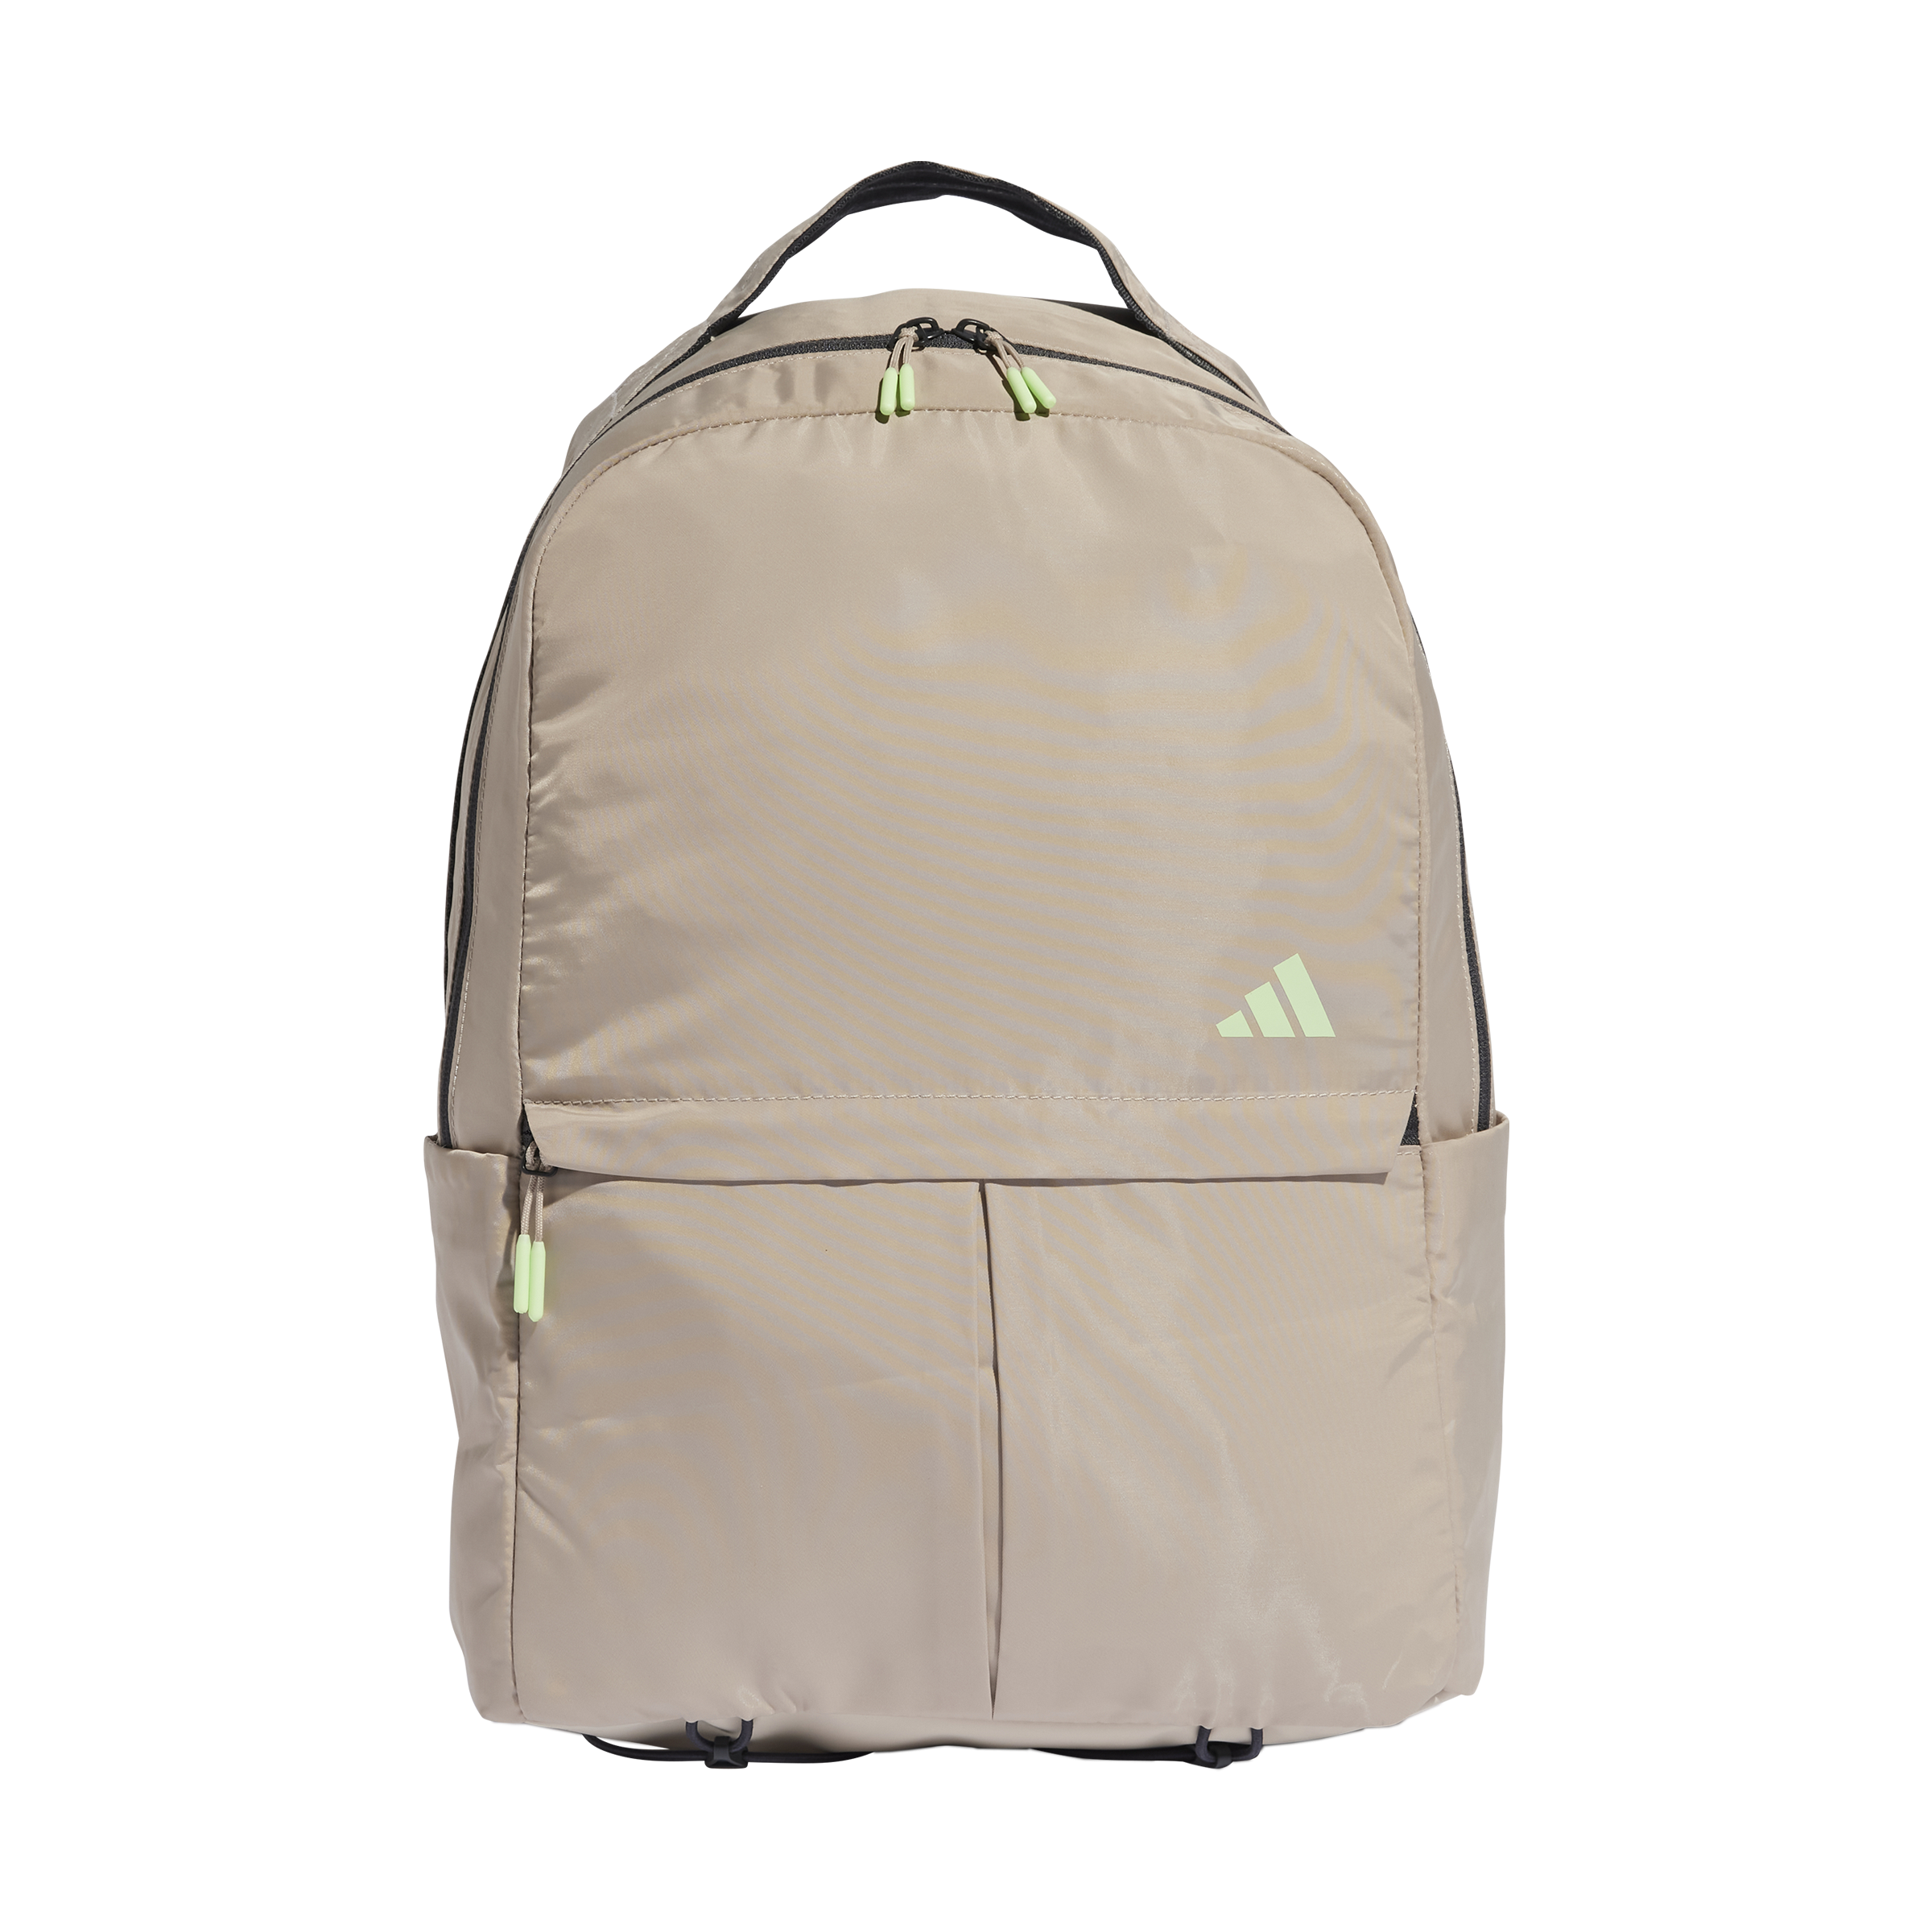 Adidas Yoga Backpack IP9194